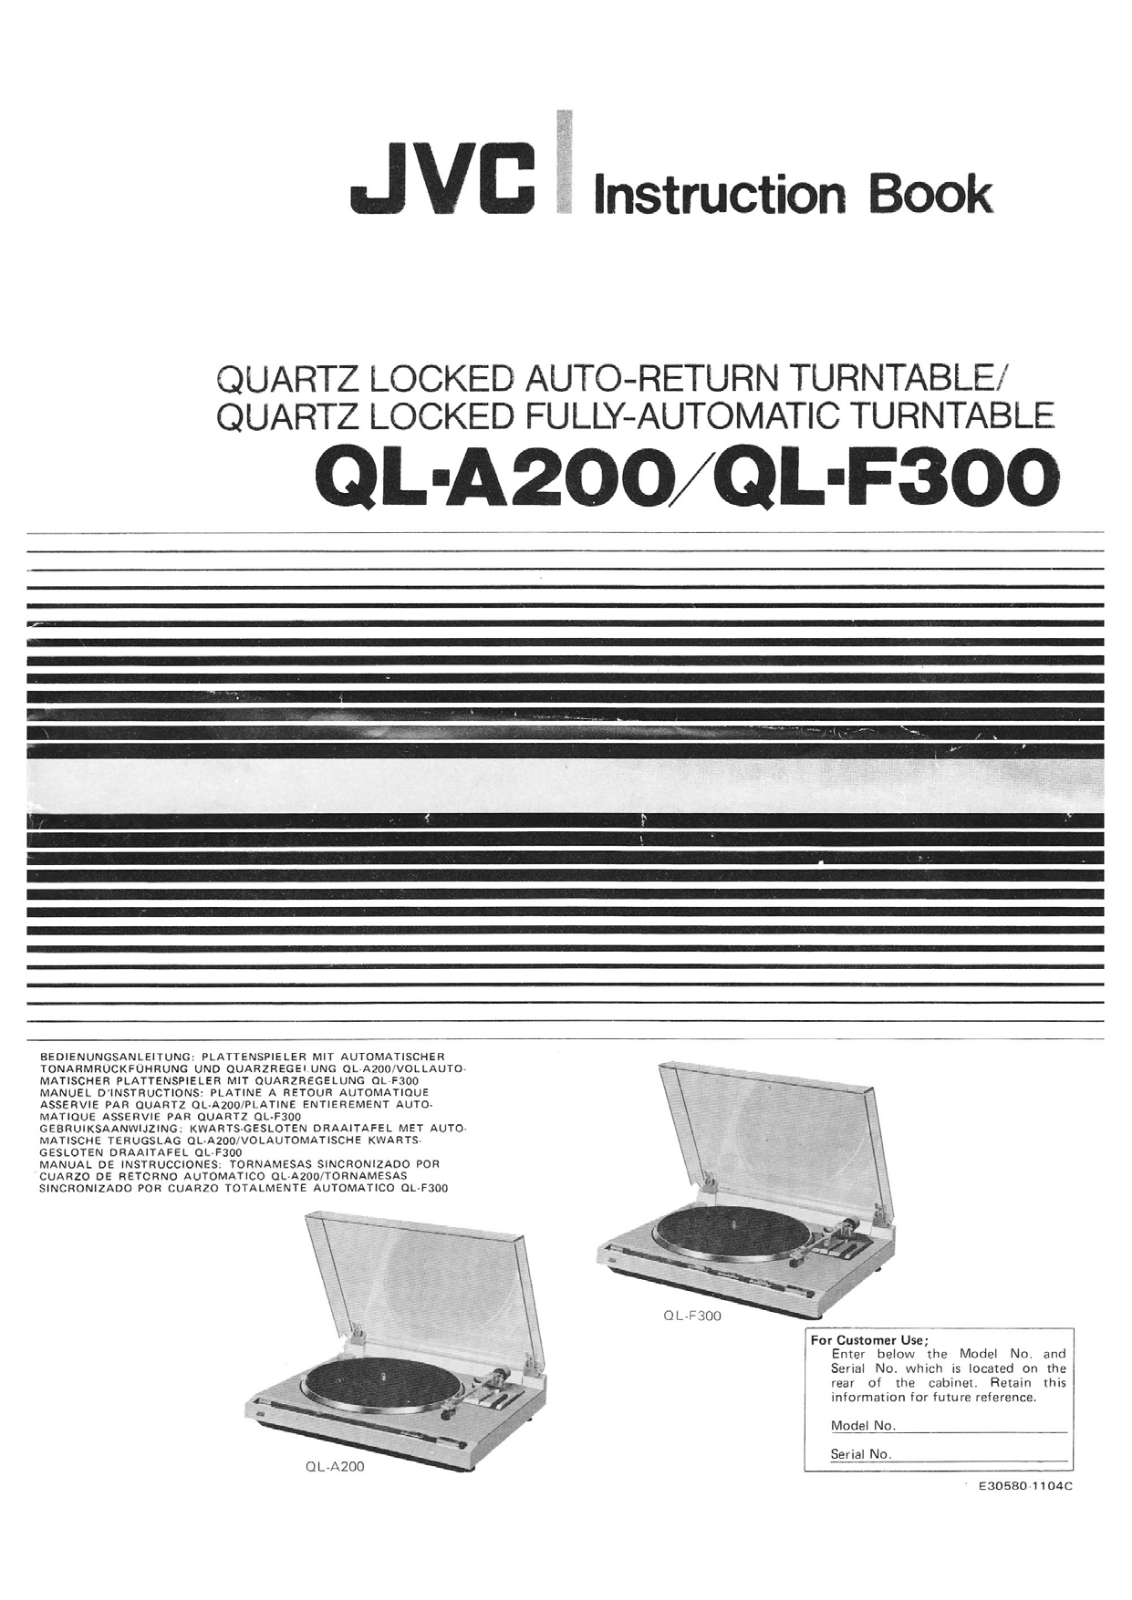 Jvc QL-F300 Owners Manual